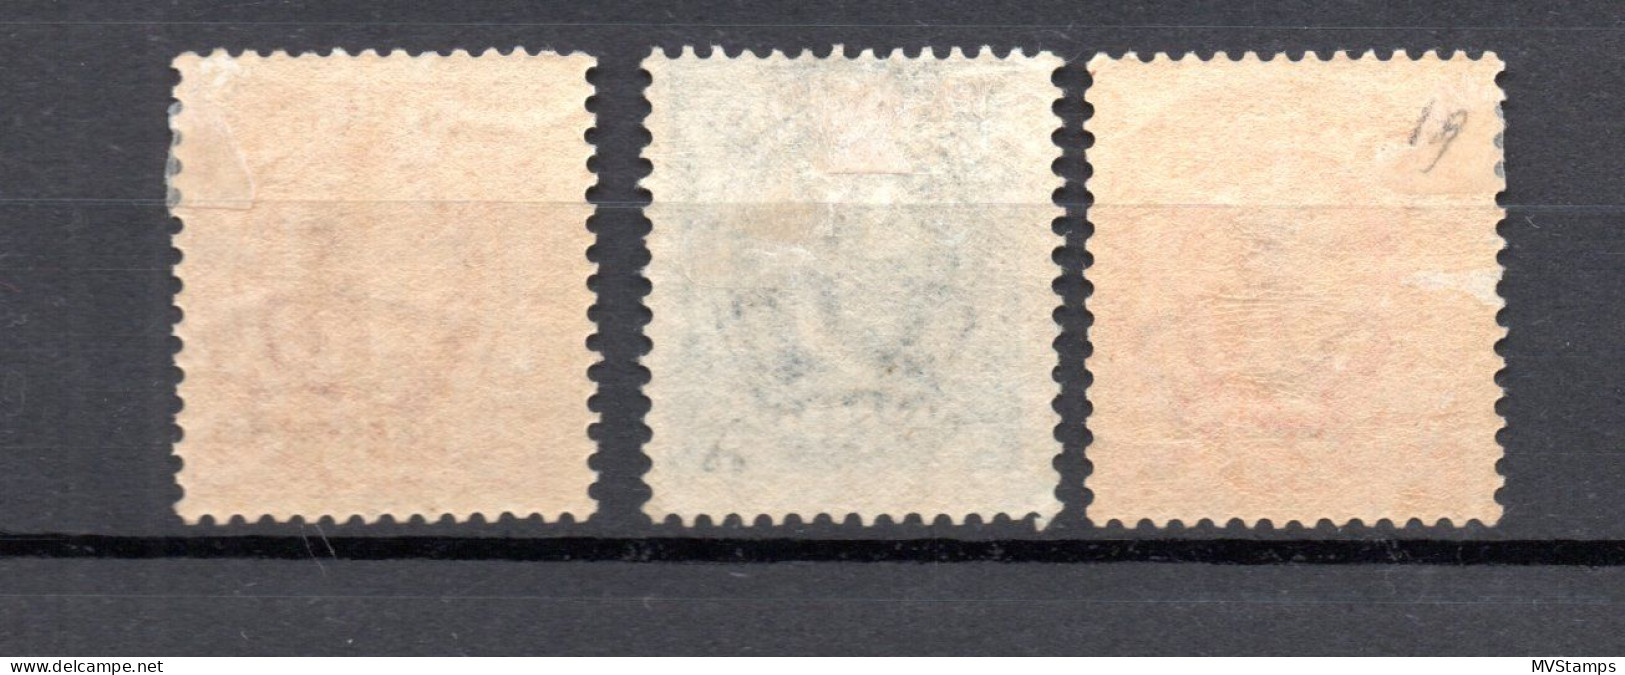 Sweden 1891 Old Definitive King Oscar Stamps (Michel 44/46) Nice MLH - Neufs